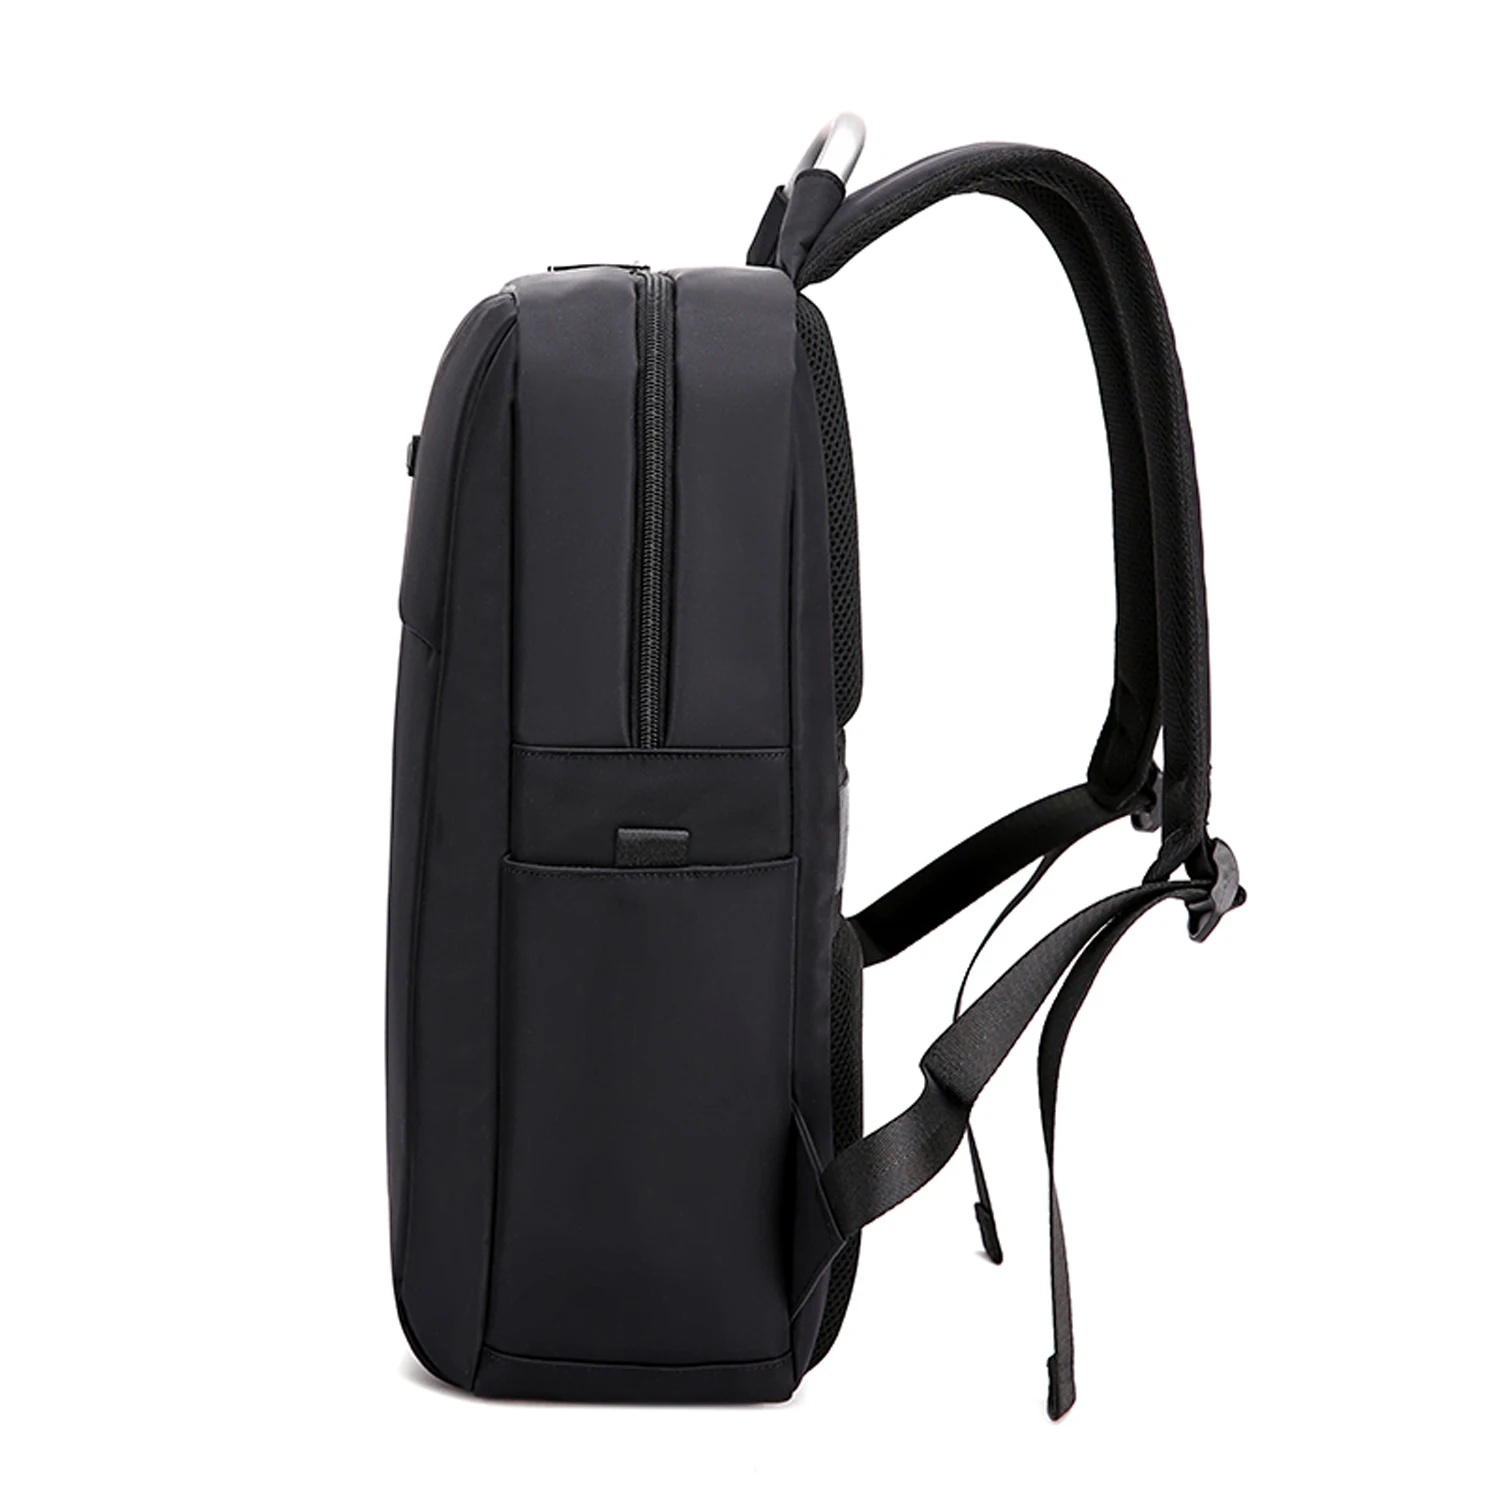 Мужские 15,6 дюймовые рюкзаки для ноутбука, школьные модные дорожные мужские рюкзаки, женские повседневные школьные рюкзаки - Цвет: Black